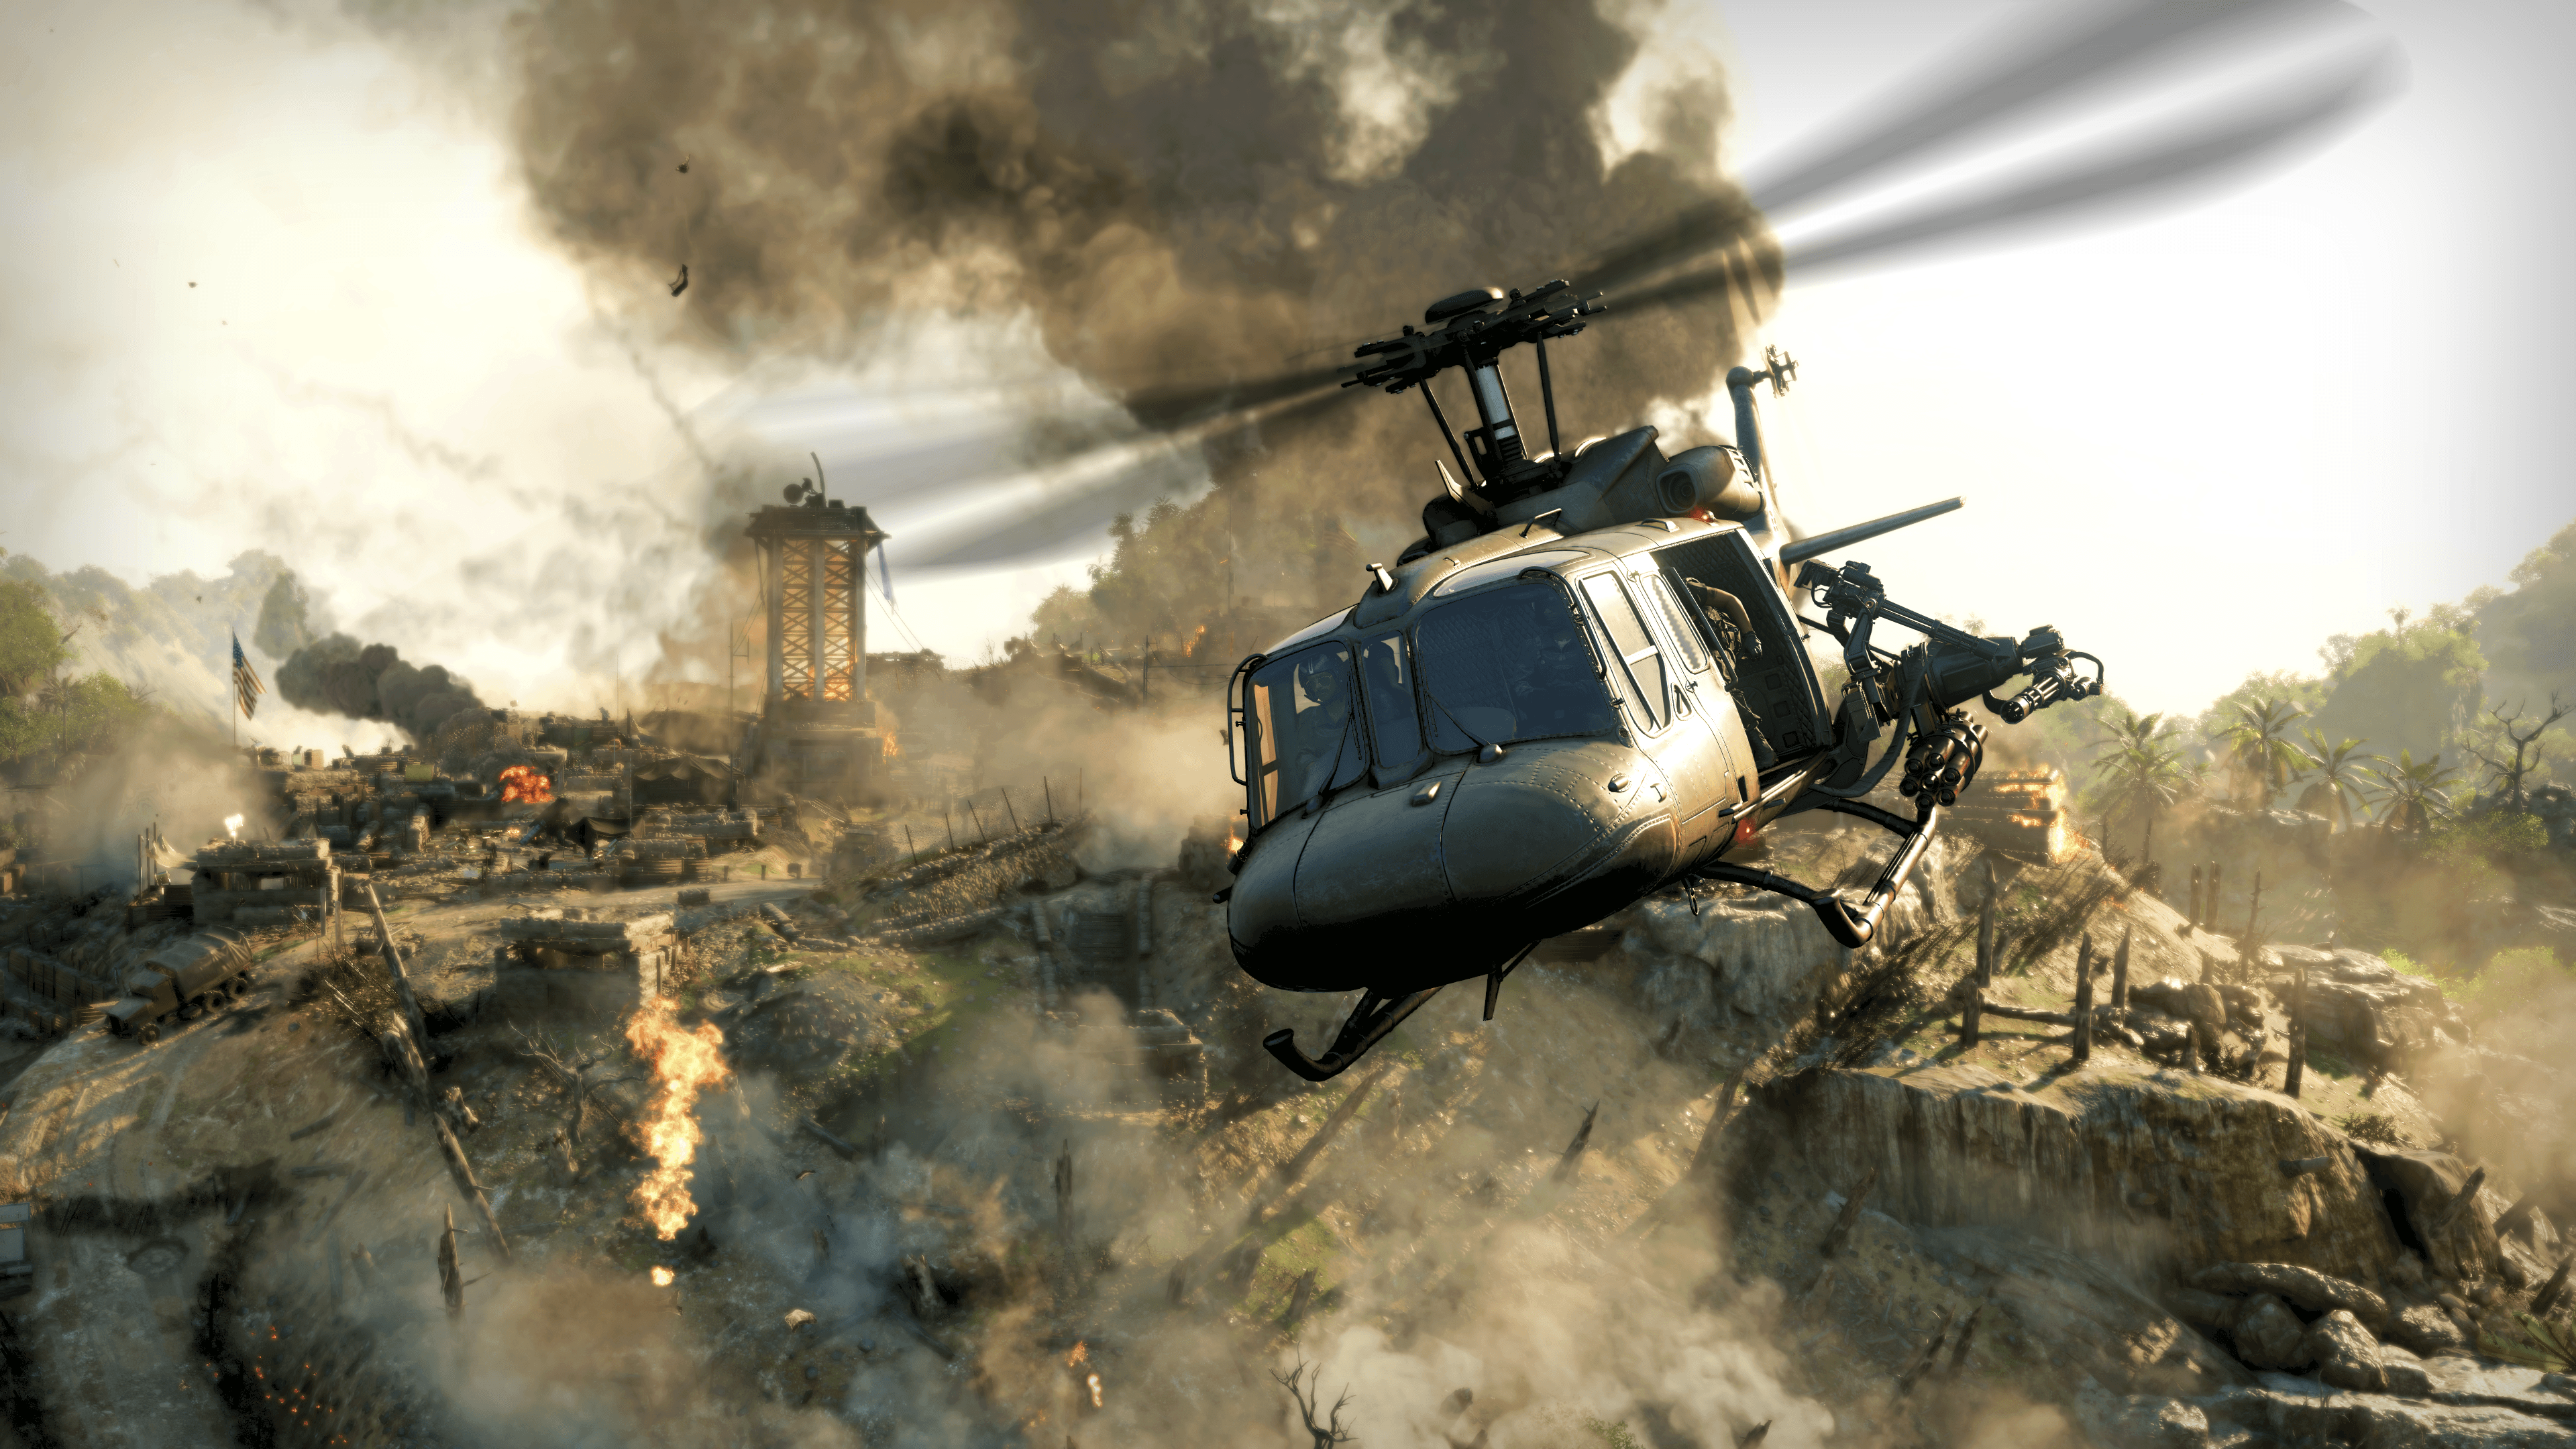 Call of Duty: Black Ops Cold War – predstavitveni posnetek zaslona